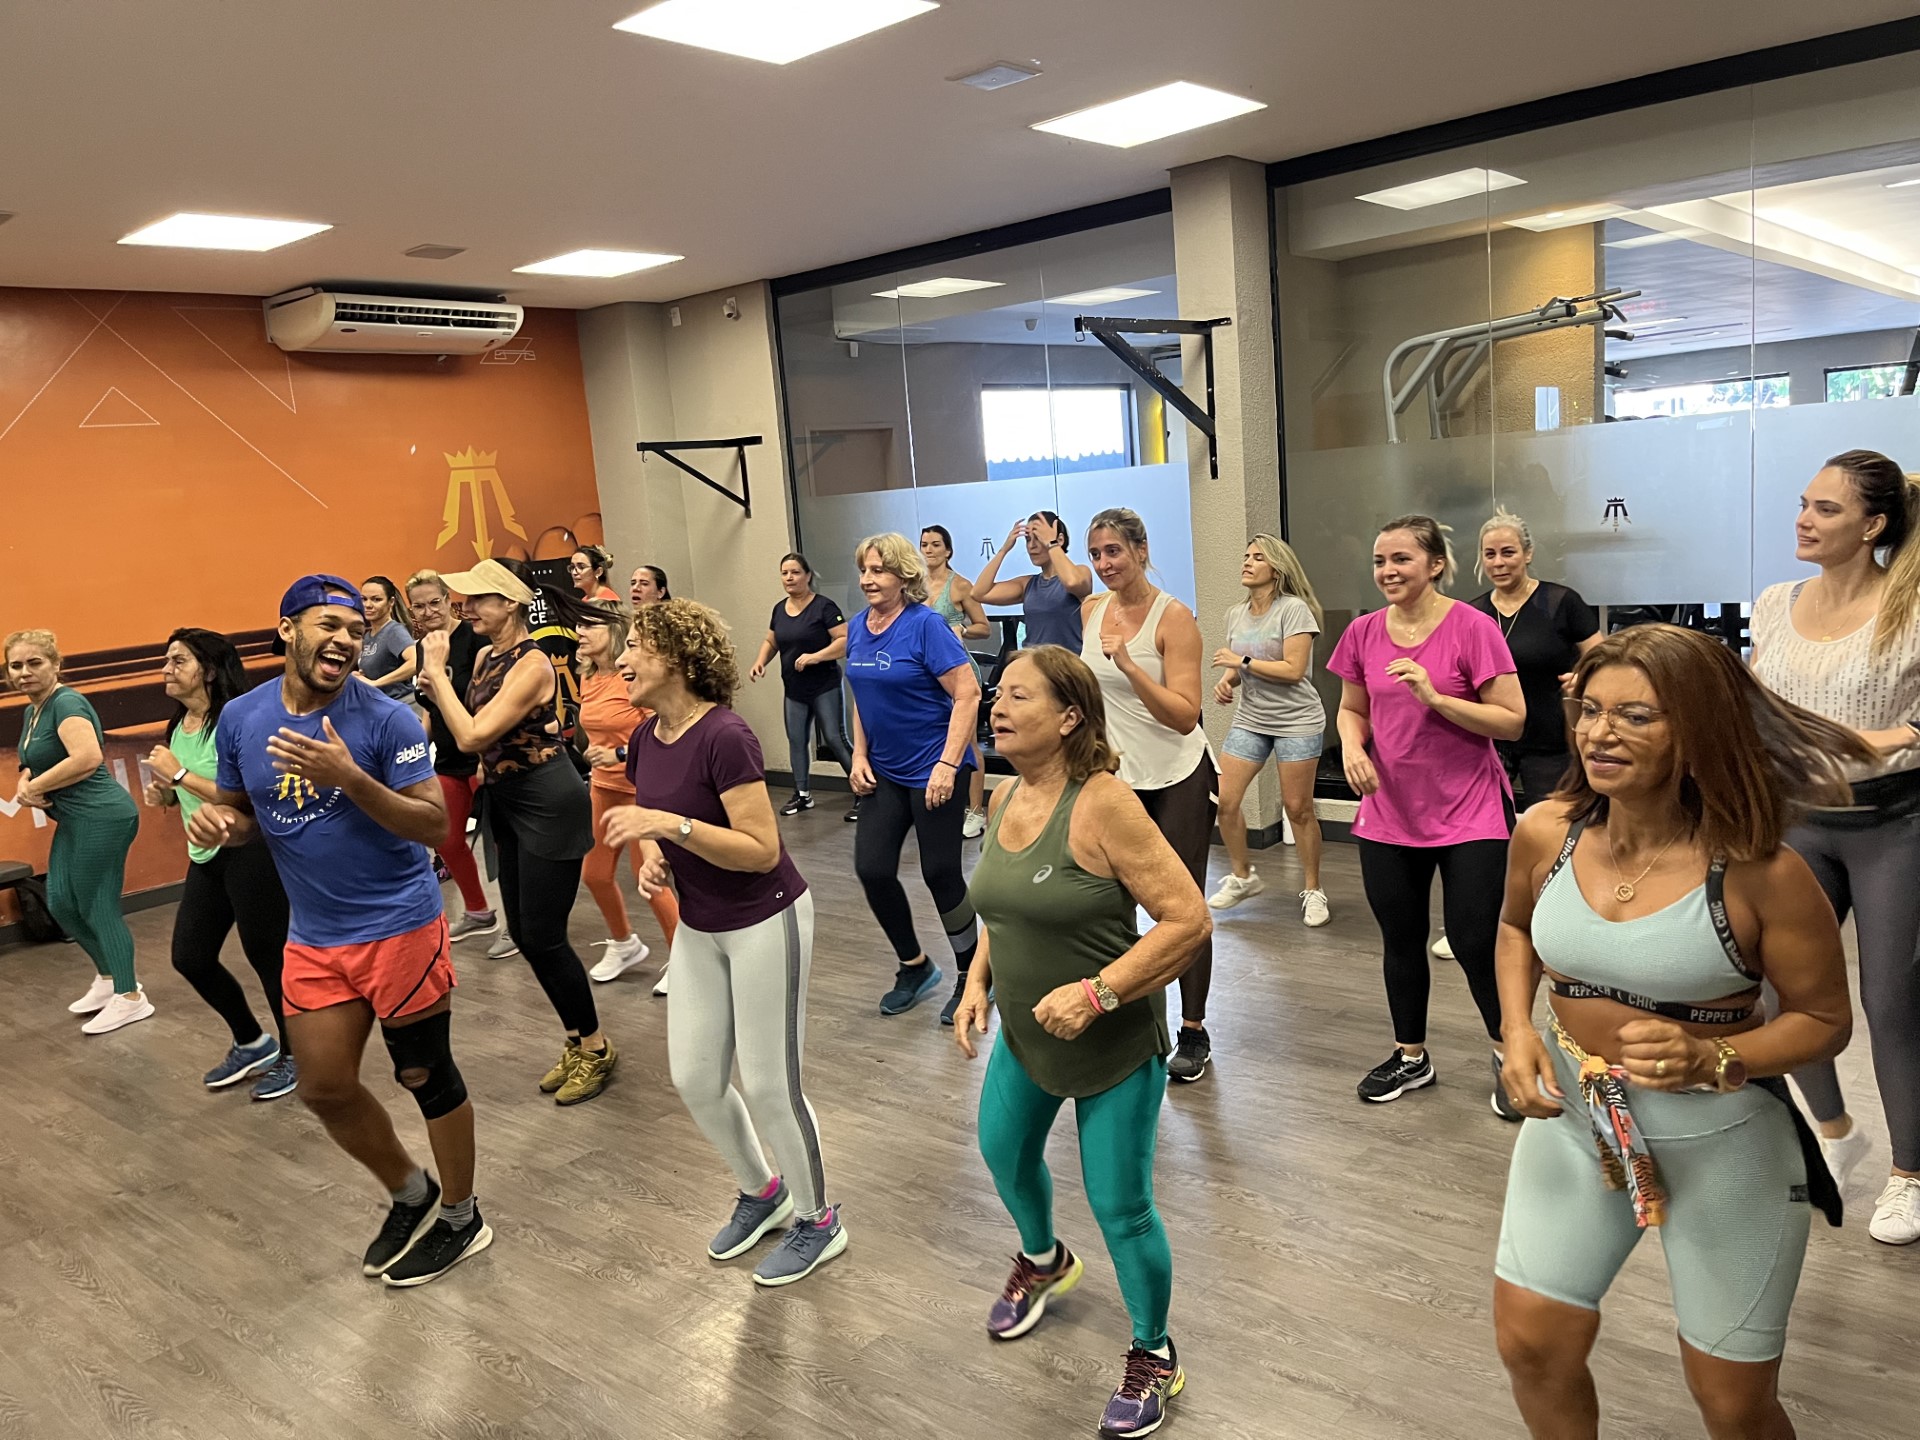  ZUMBA 45′ |  Modalidade Prem1um Fitness | Academia em Maceió | O seu espaço fitness e wellness em Maceió